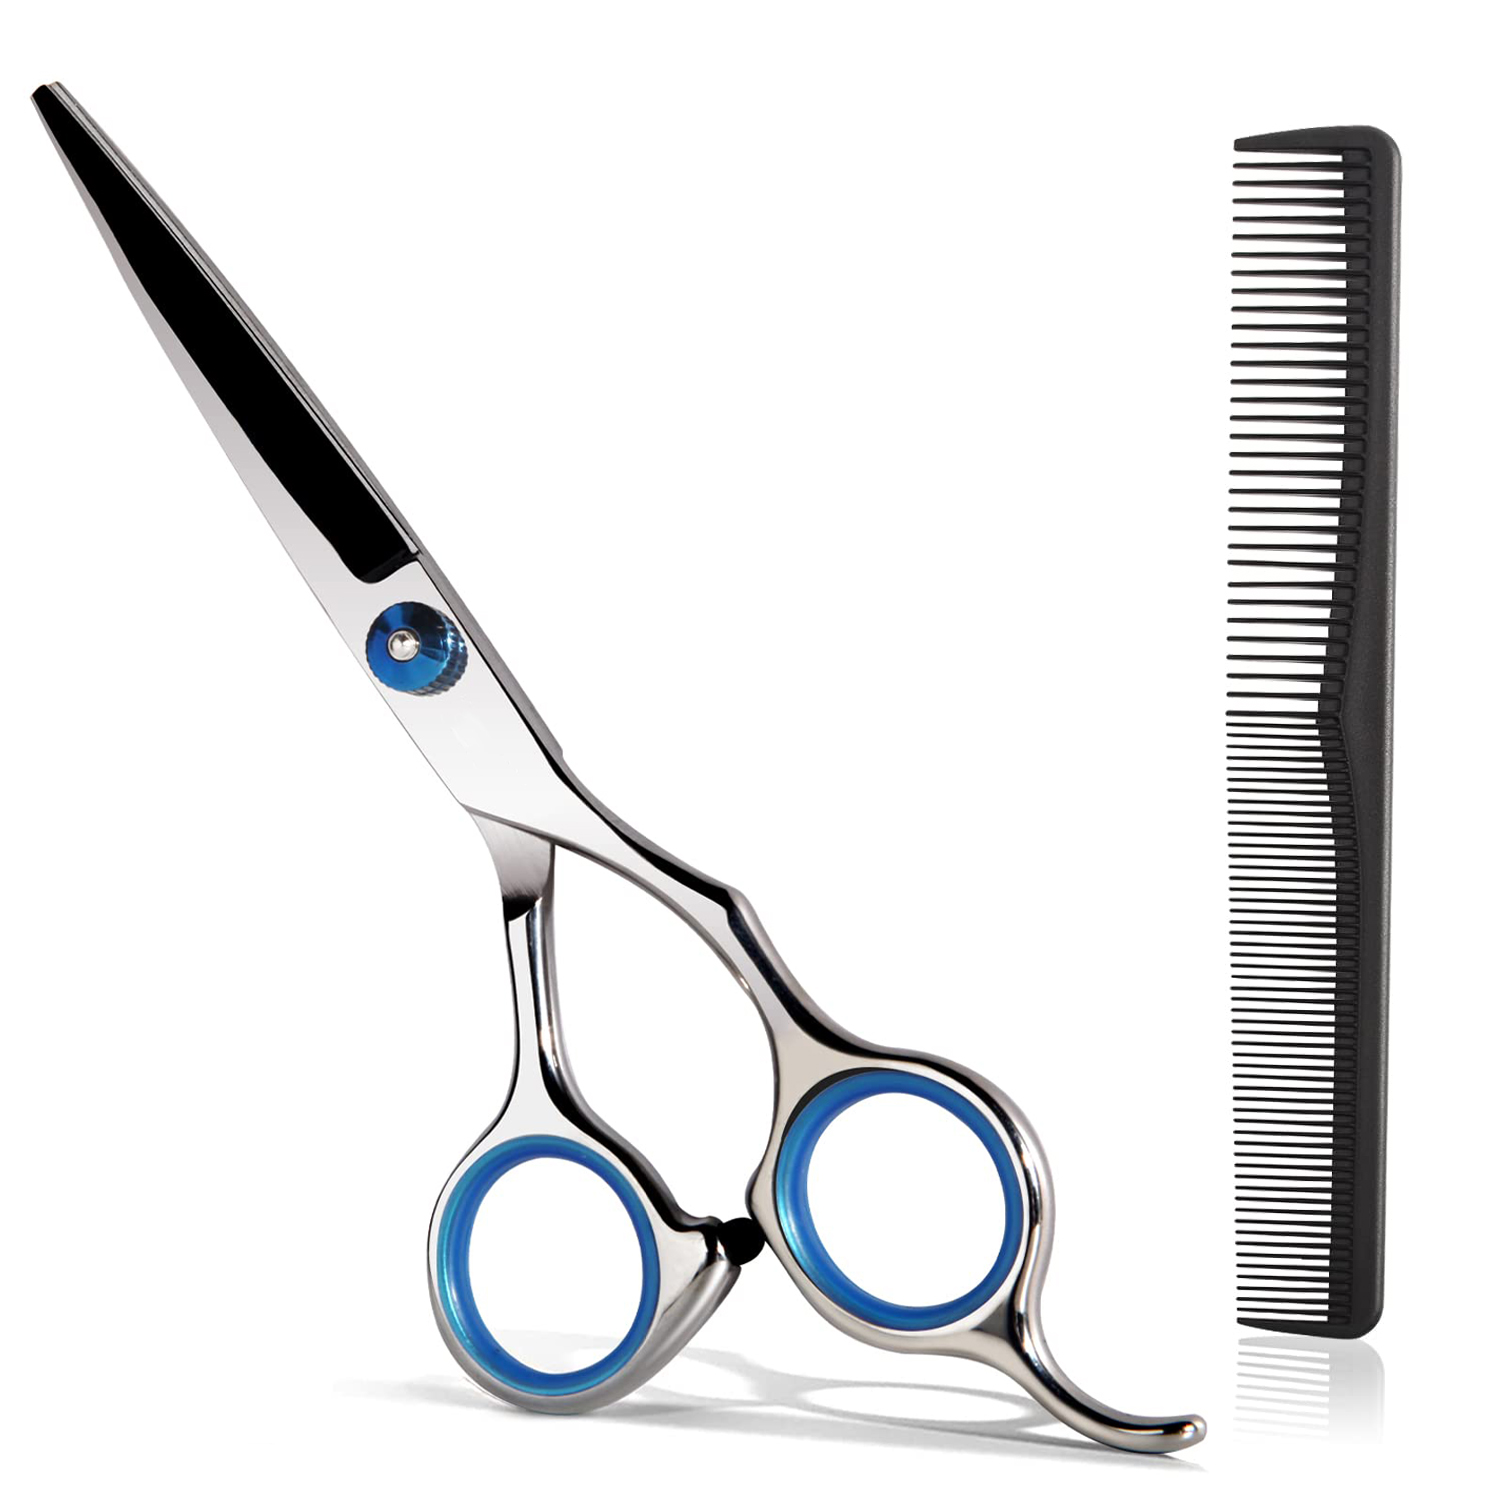 Kapmore 2 Pairs 6in Hair Scissors Professional Haircut Shears Haircut Scissors for Home, Blue